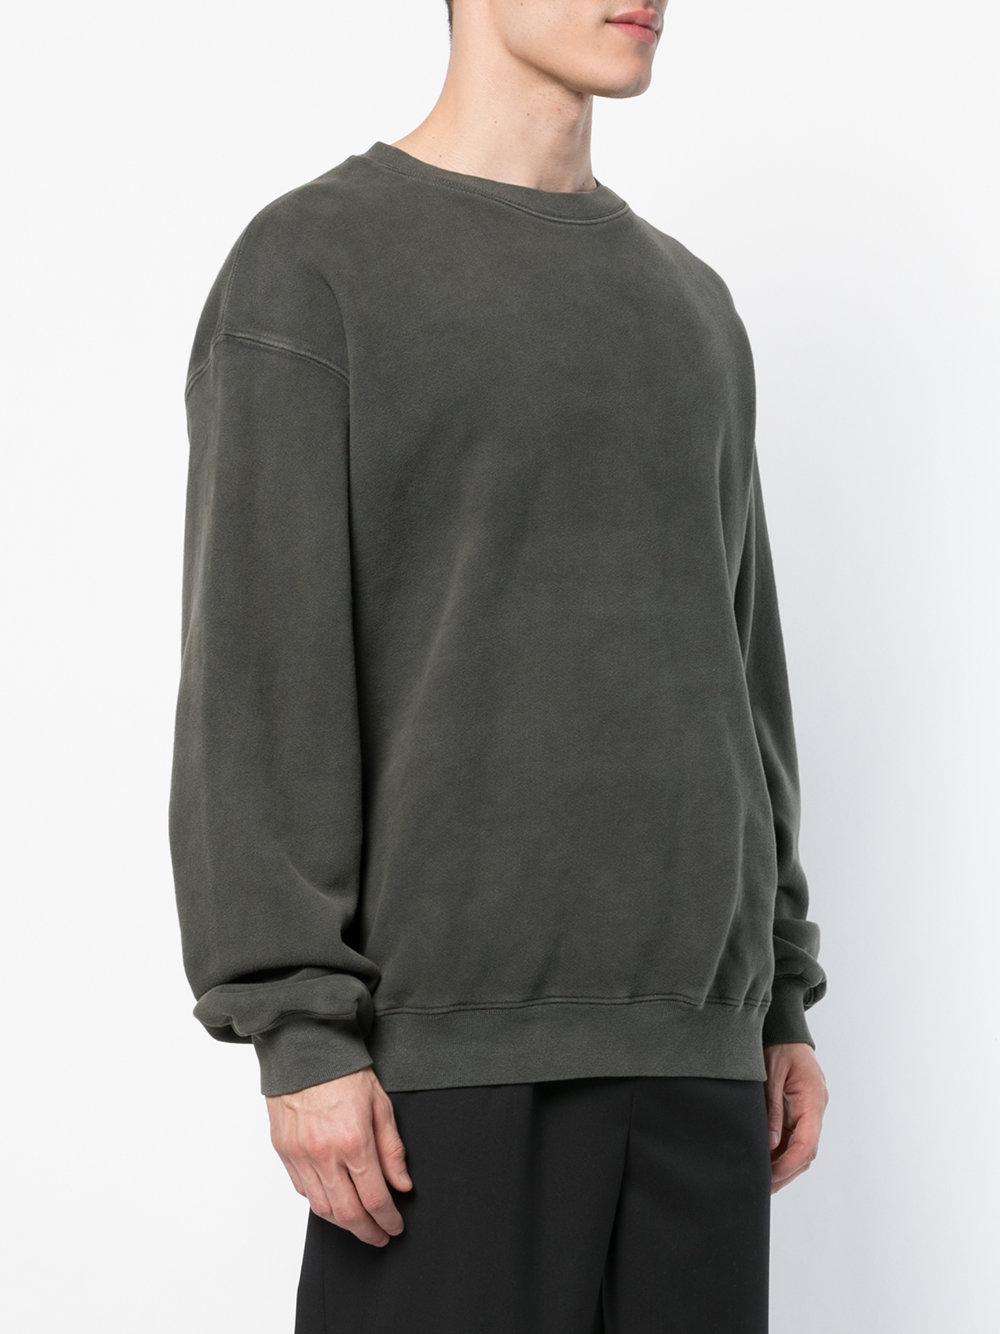 Yeezy Cotton Oversized Crewneck Sweatshirt in Grey (Gray) for Men - Lyst